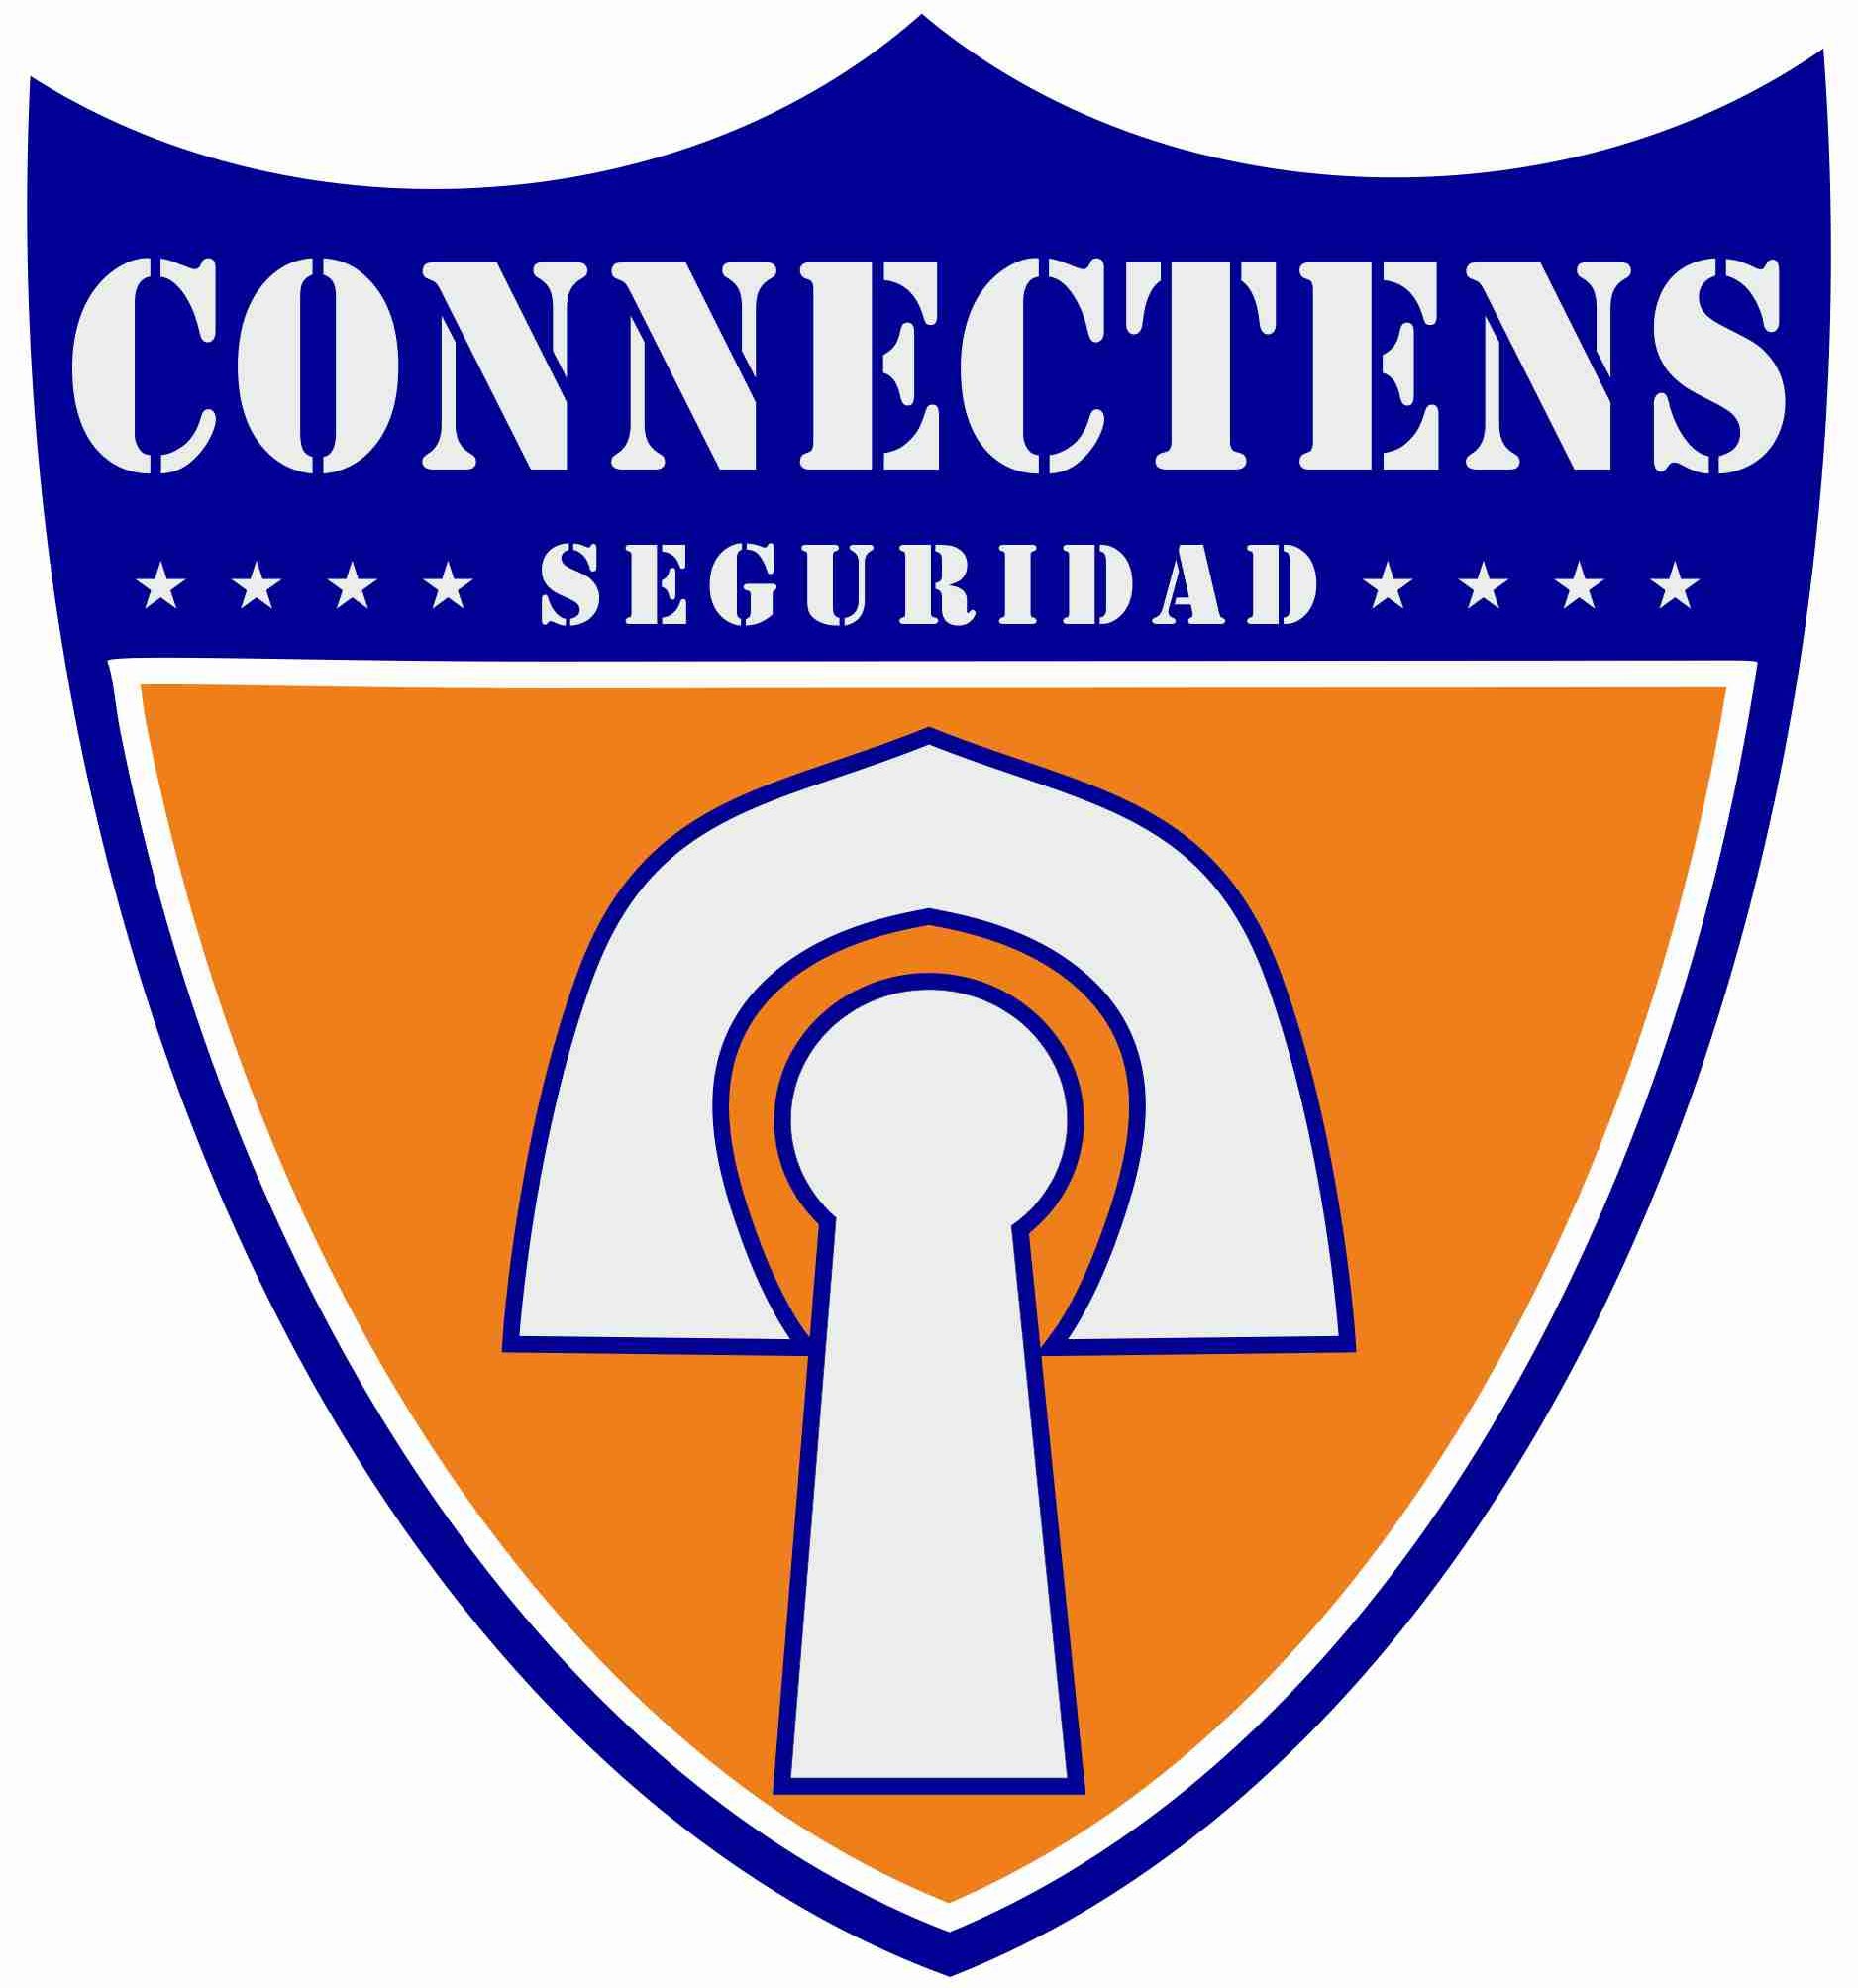 Seguridad privada en Madrid| Connectens Seguridad S.L.